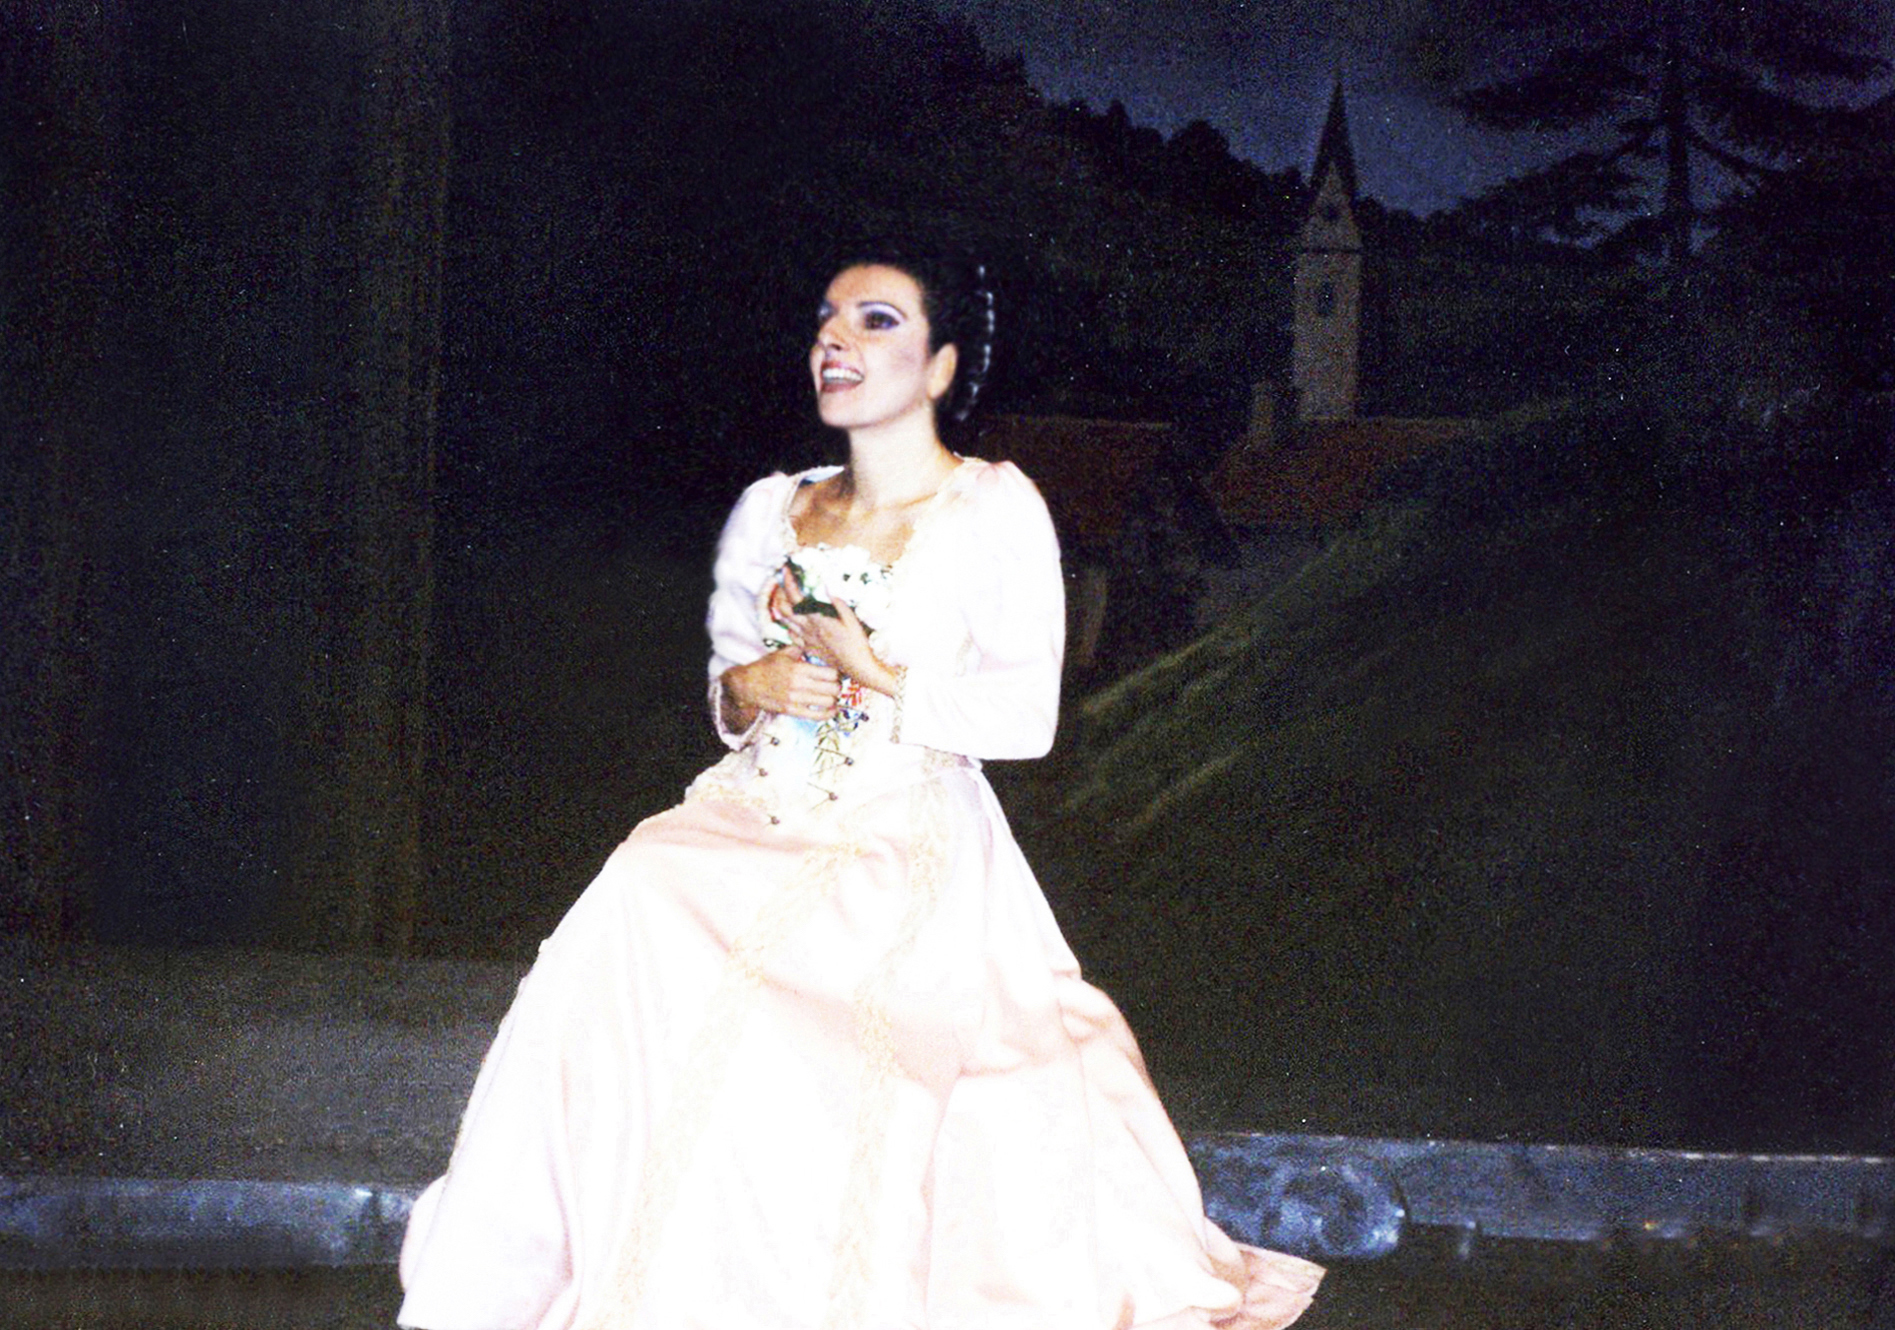 Lucia Aliberti⚘Tokyo Bunka Kaikan⚘Tokyo⚘Opera⚘”La Sonnambula"⚘On Stage⚘:http://www.luciaaliberti.it #luciaaliberti #tokyobunkakaikan #tokyo #opera #lasonnambula #onstage #applause